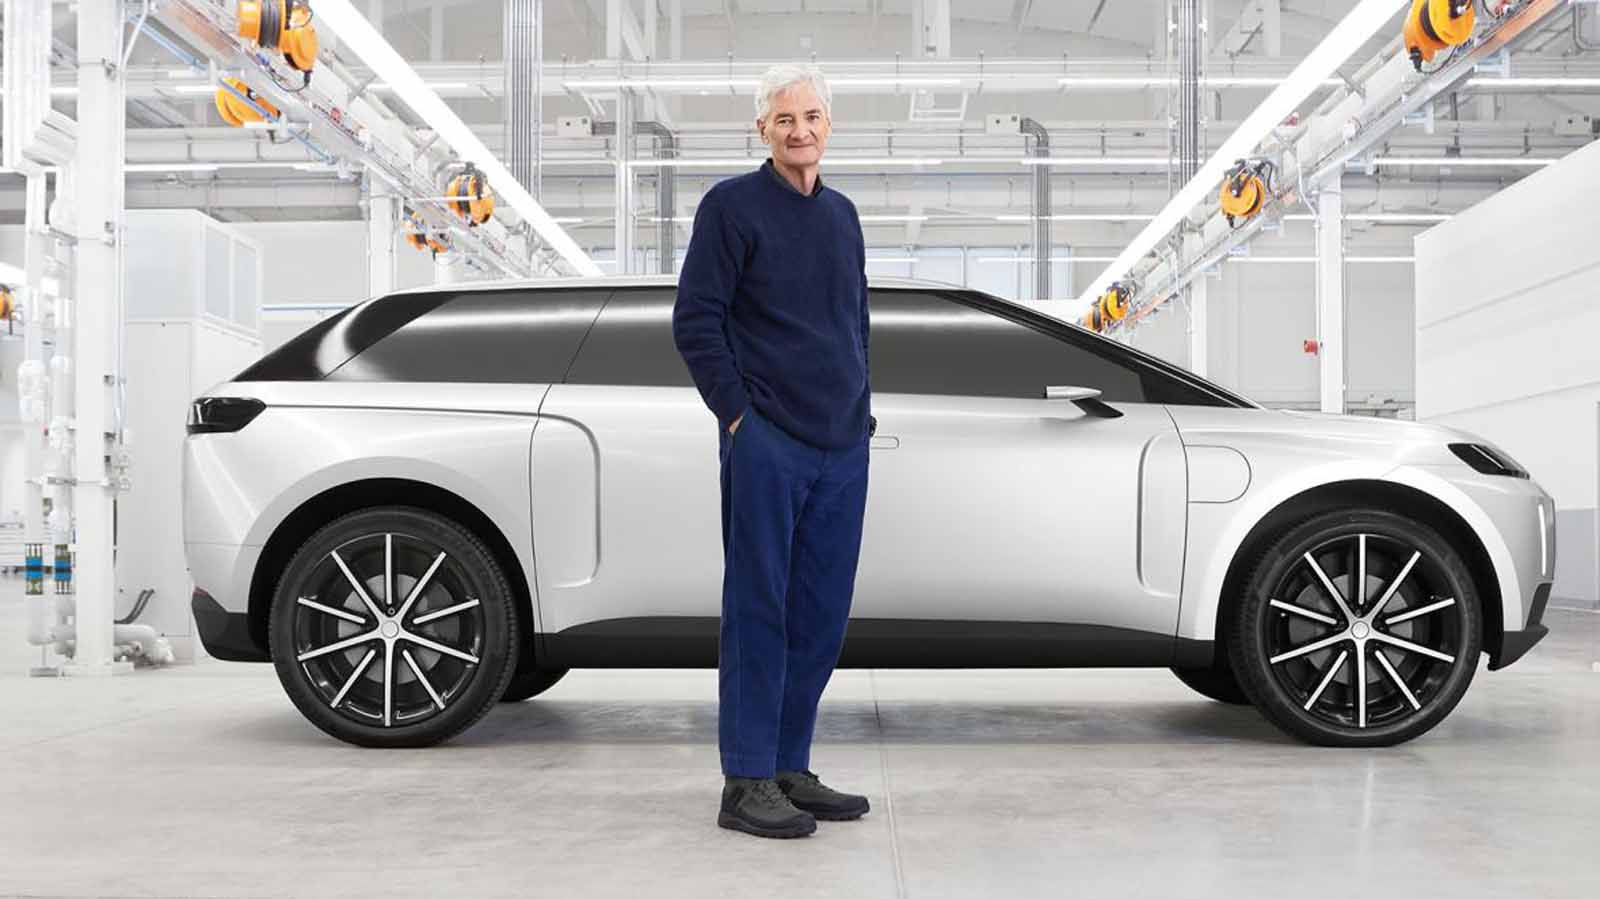 Miliardár James Dyson skoncoval s elektromobilom, prišiel o 553 miliónov eur. Vraj to bol správny krok